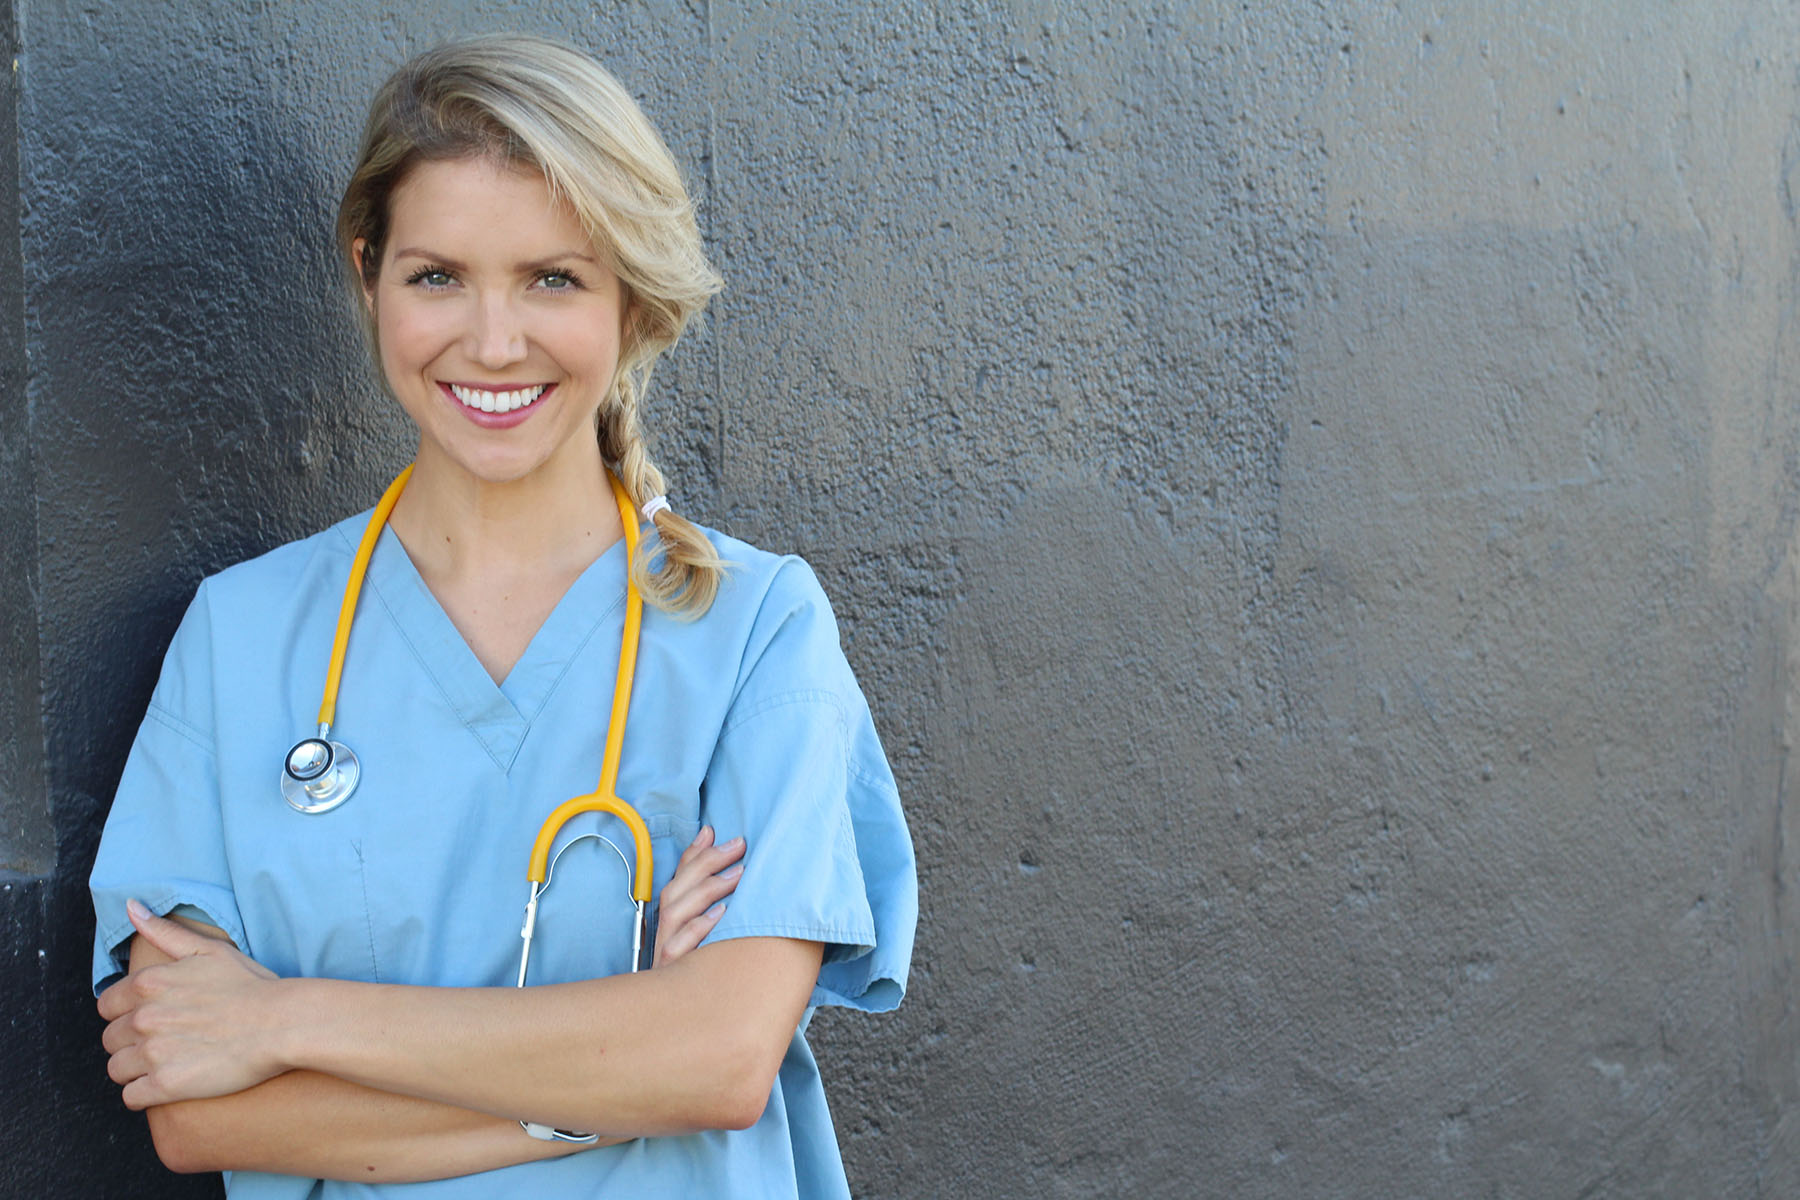 How to Get Into a Practical Nursing Program